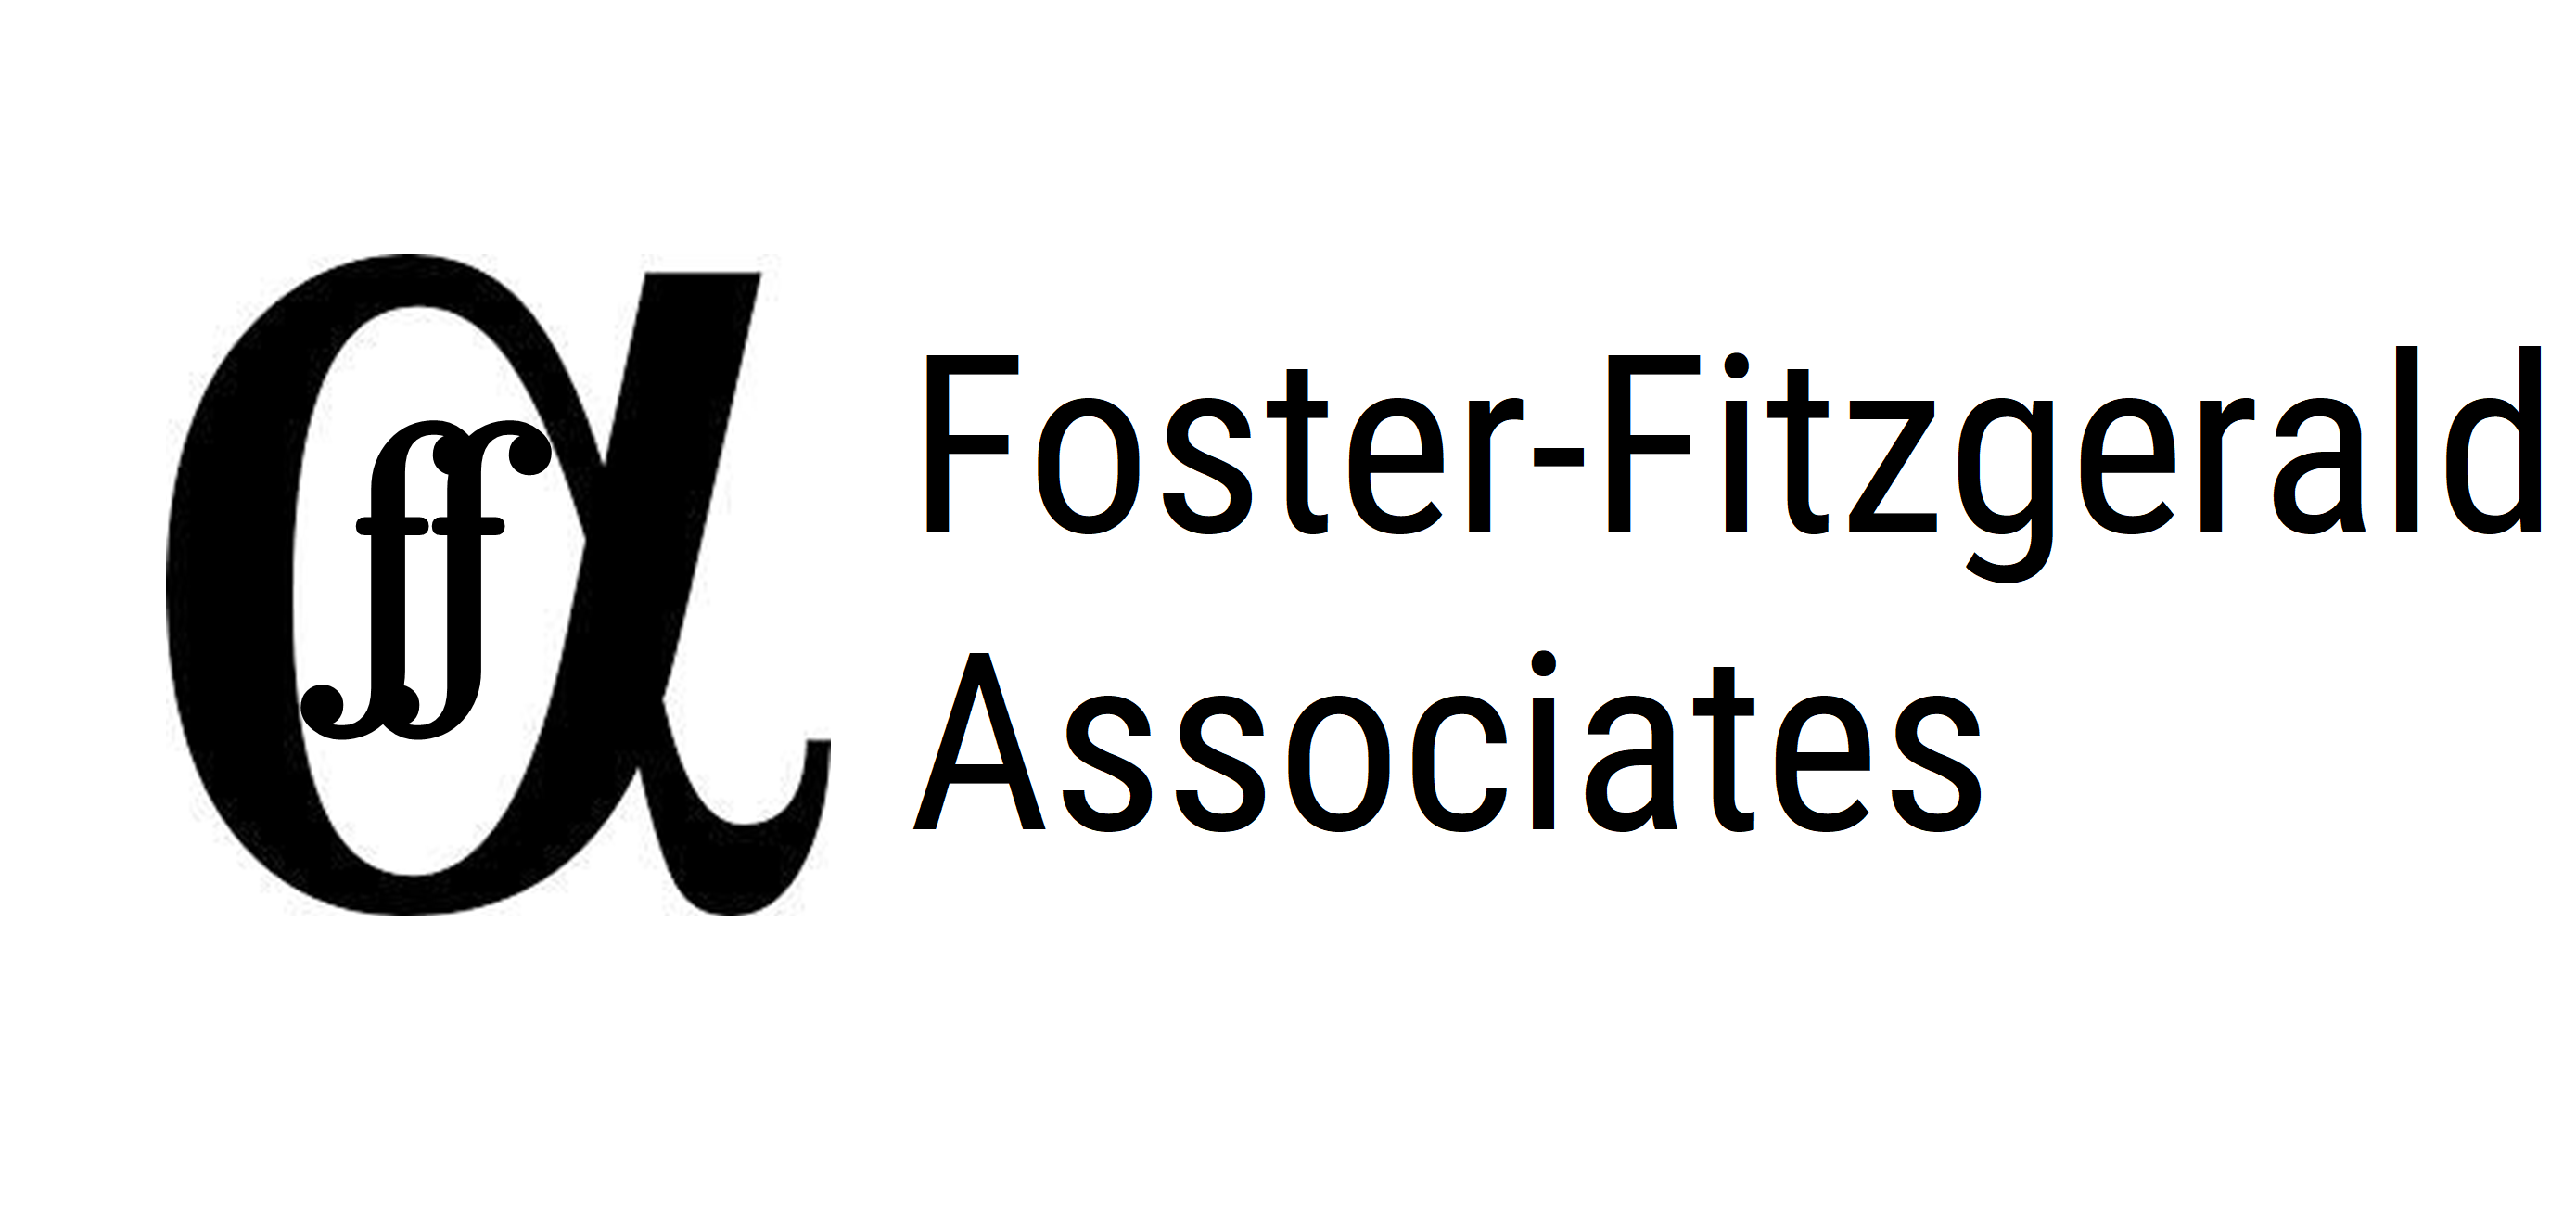 Foster-Fitzgerald Associates